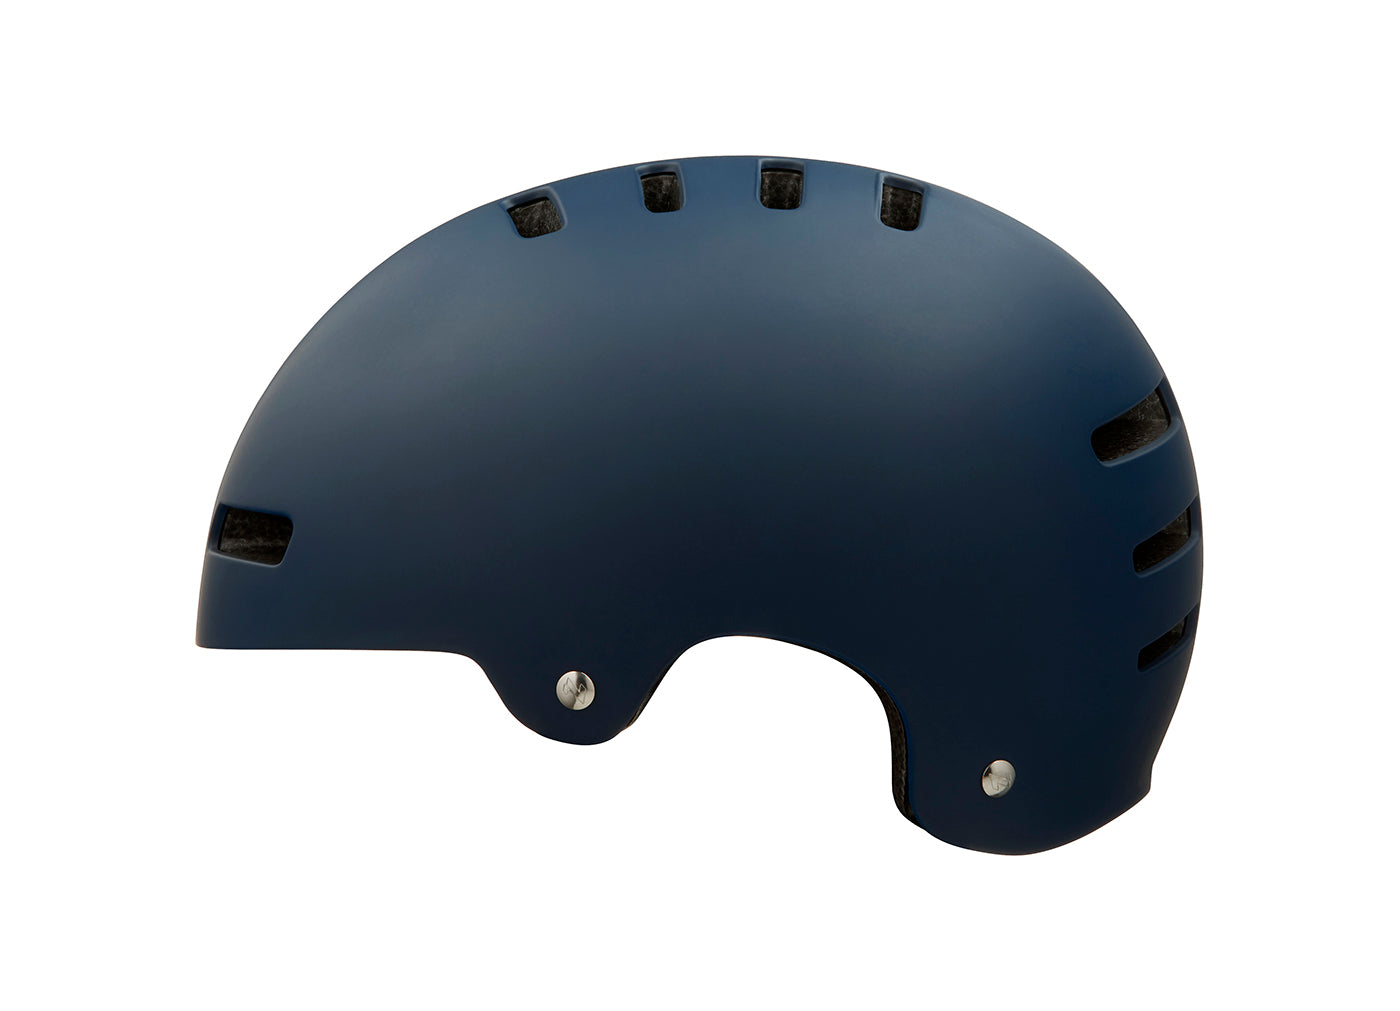 Lazer Helmet One+